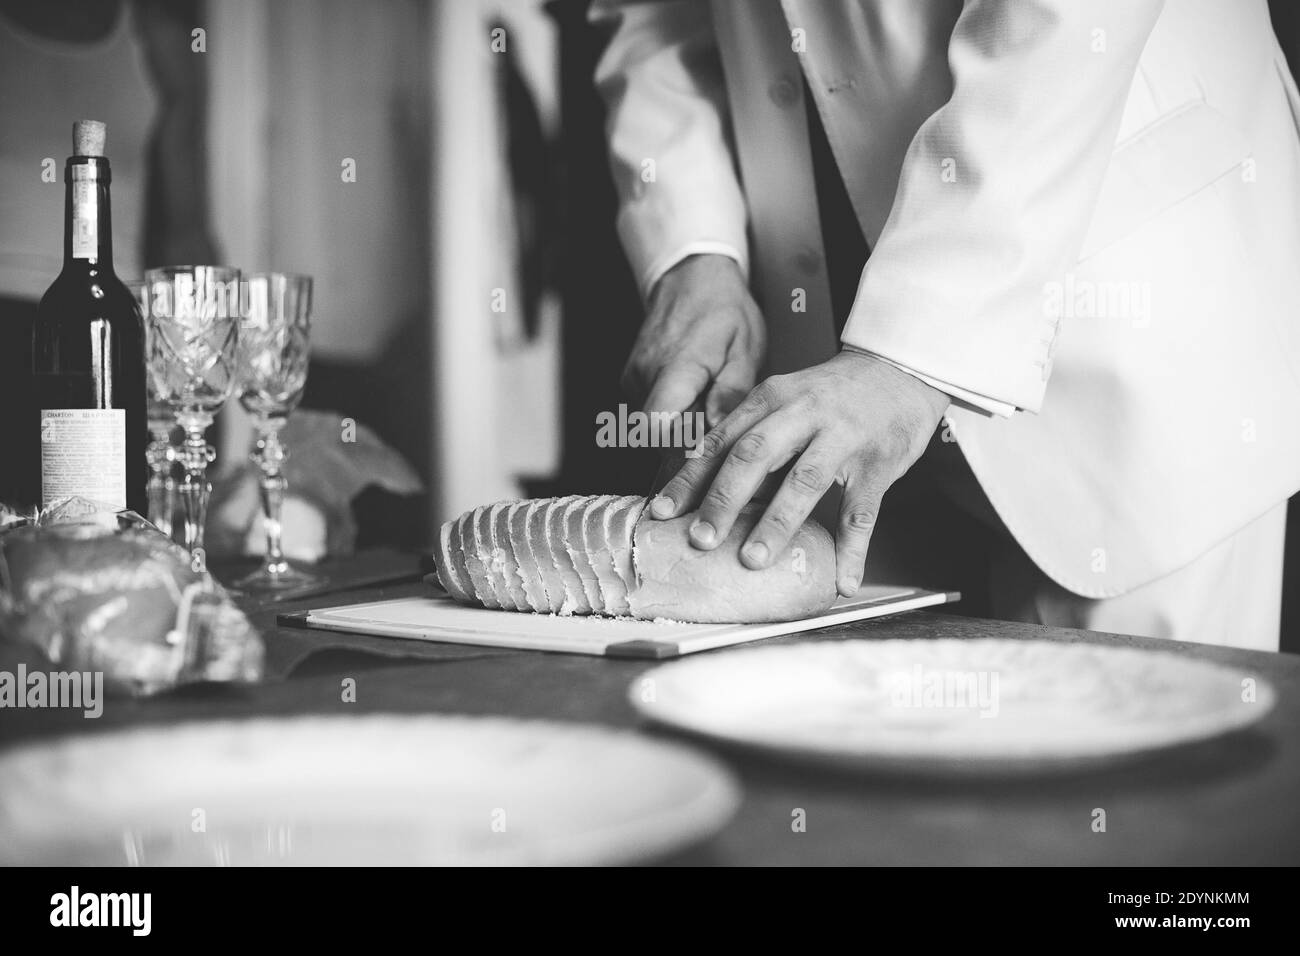 Der Mann schneidet Brot. Festlicher Tisch. Schwarzweiß-Fotografie. Stockfoto